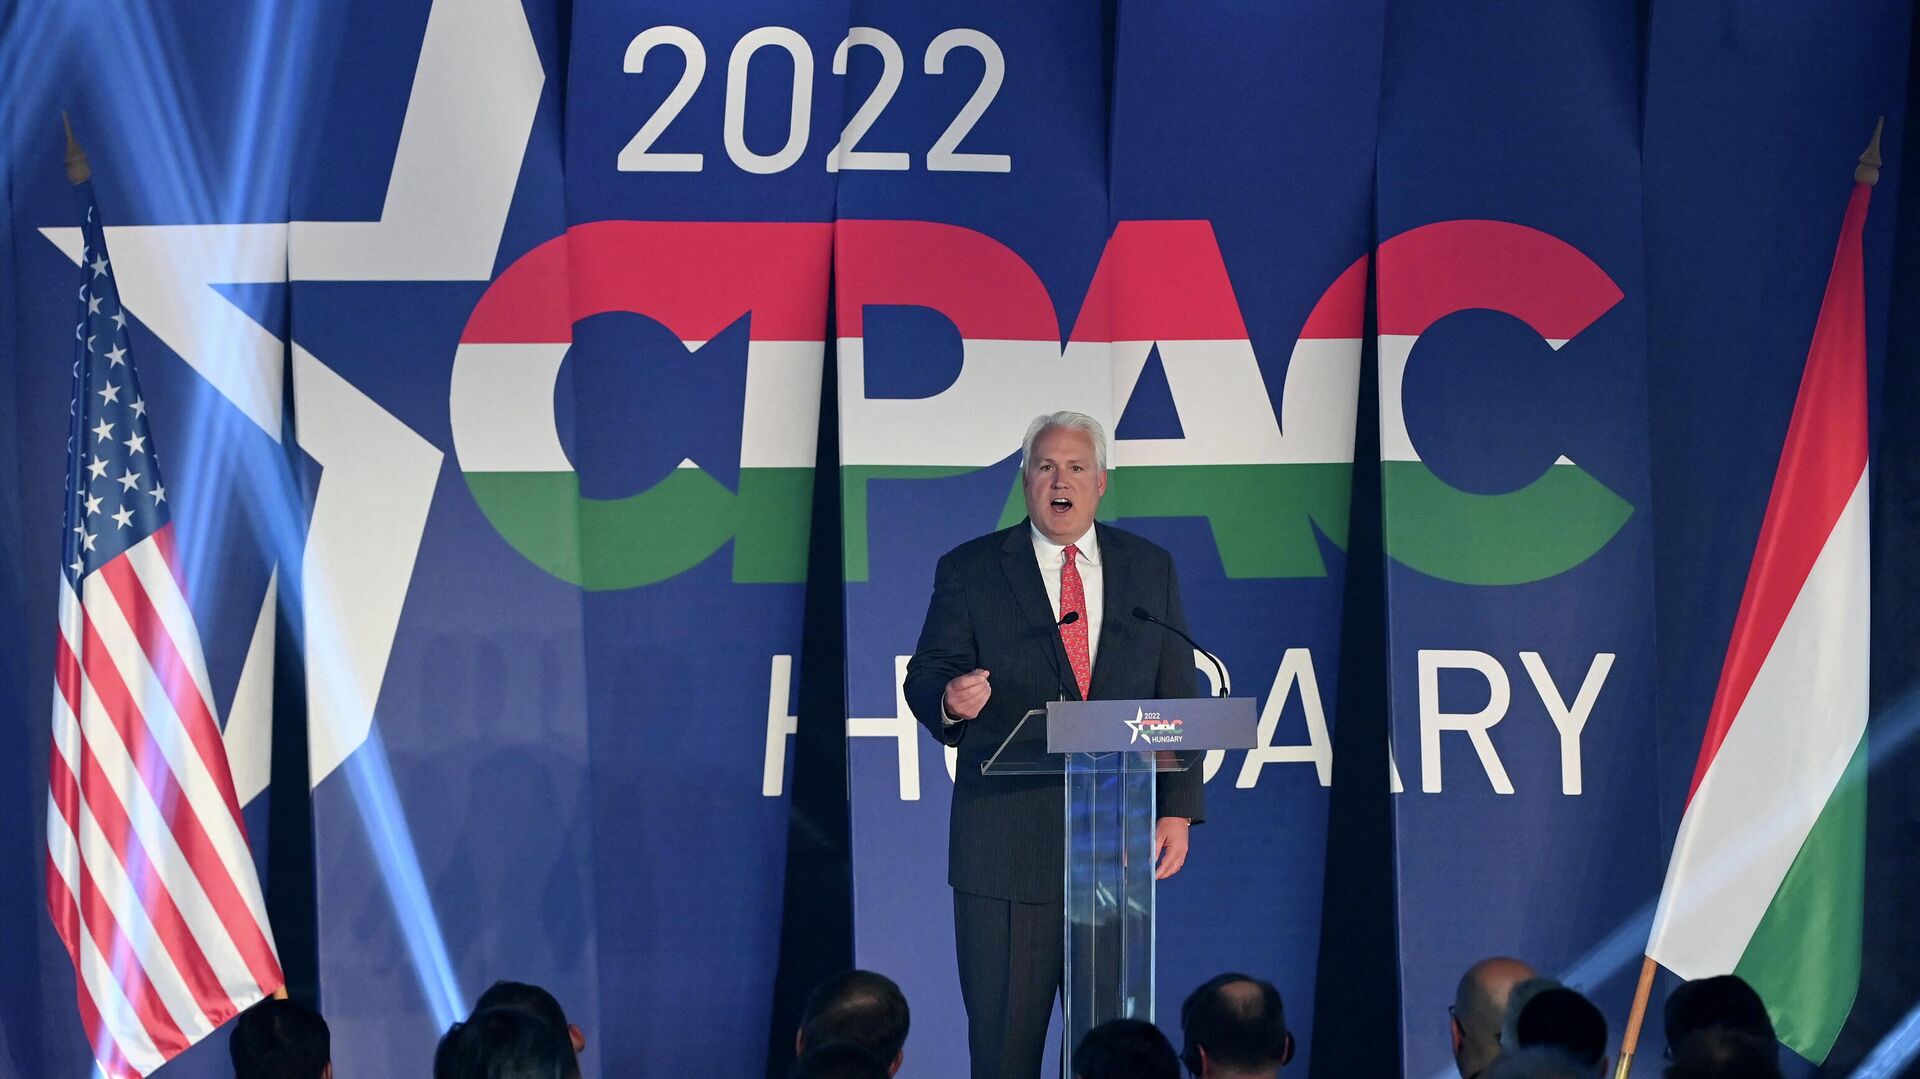 Председатель Американского консервативного союза Мэтт Шлапп выступает в Будапеште, Венгрия, 19 мая 2022 года - ИноСМИ, 1920, 04.10.2022